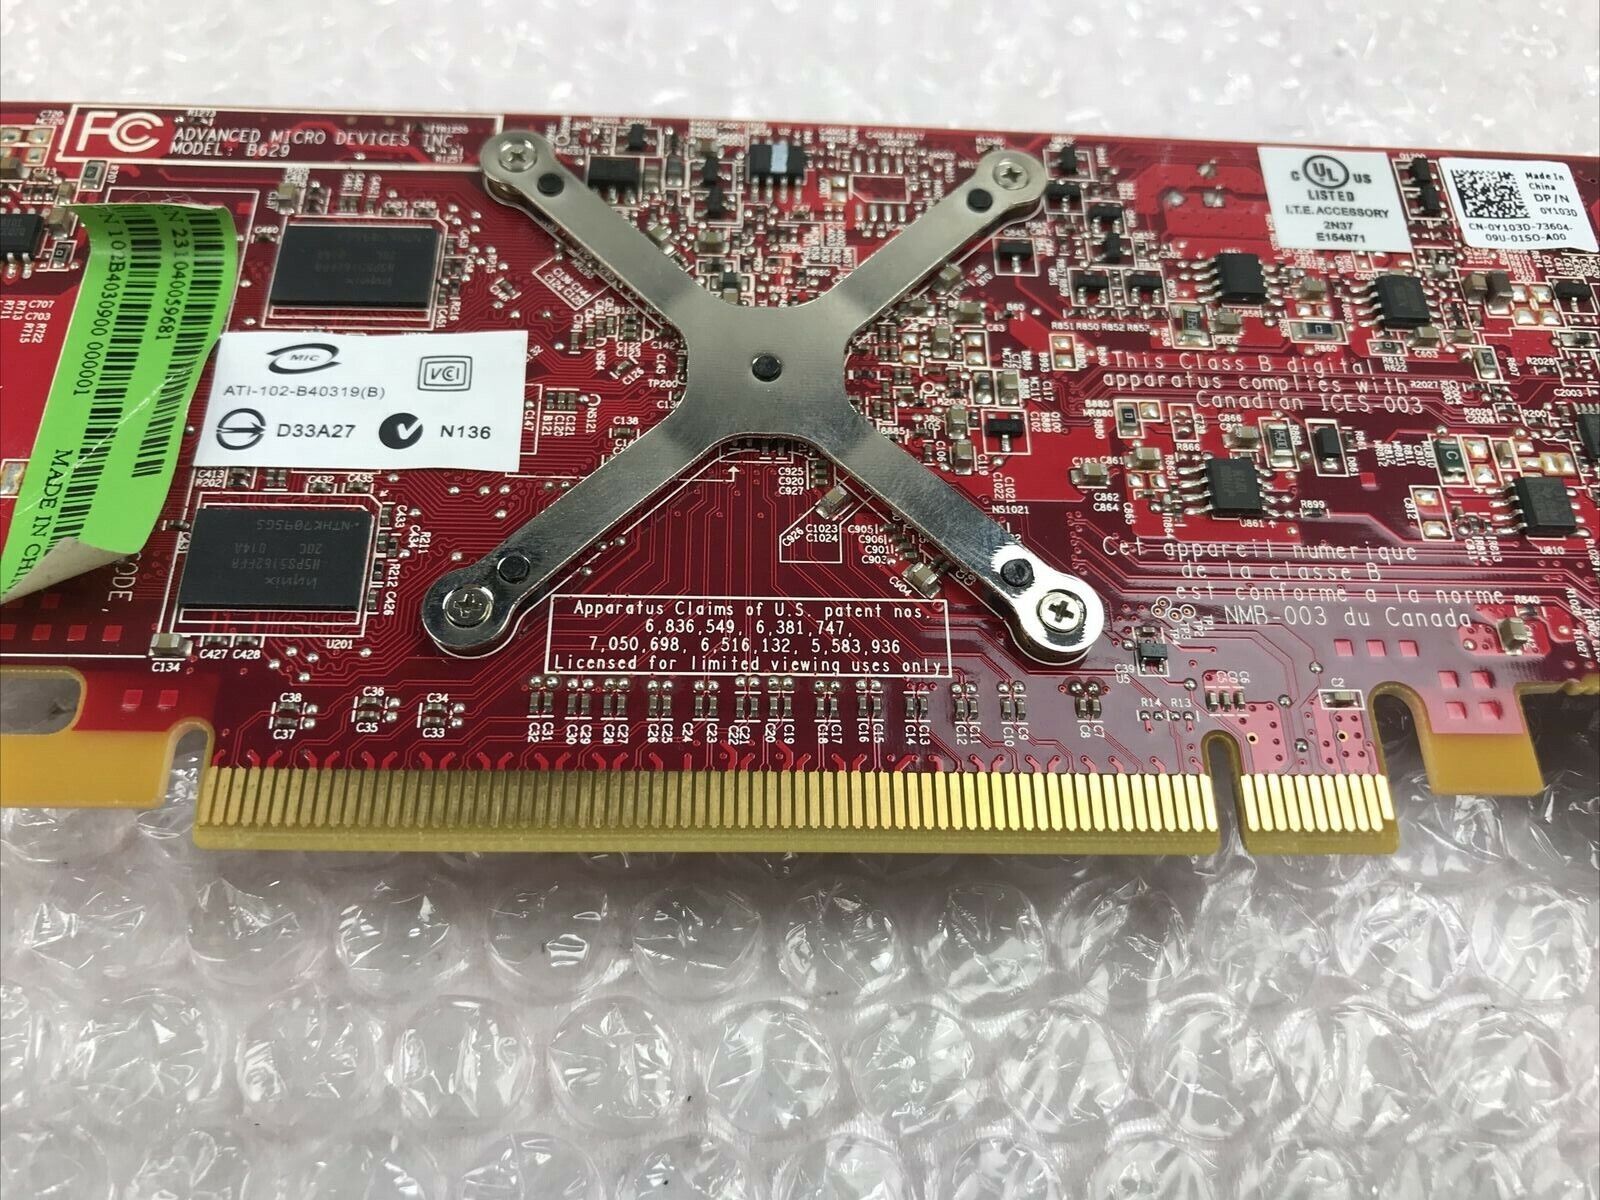 ATI 109-B62941-00 Radeon HD 3450 256MB DDR2 PCIe Video Card